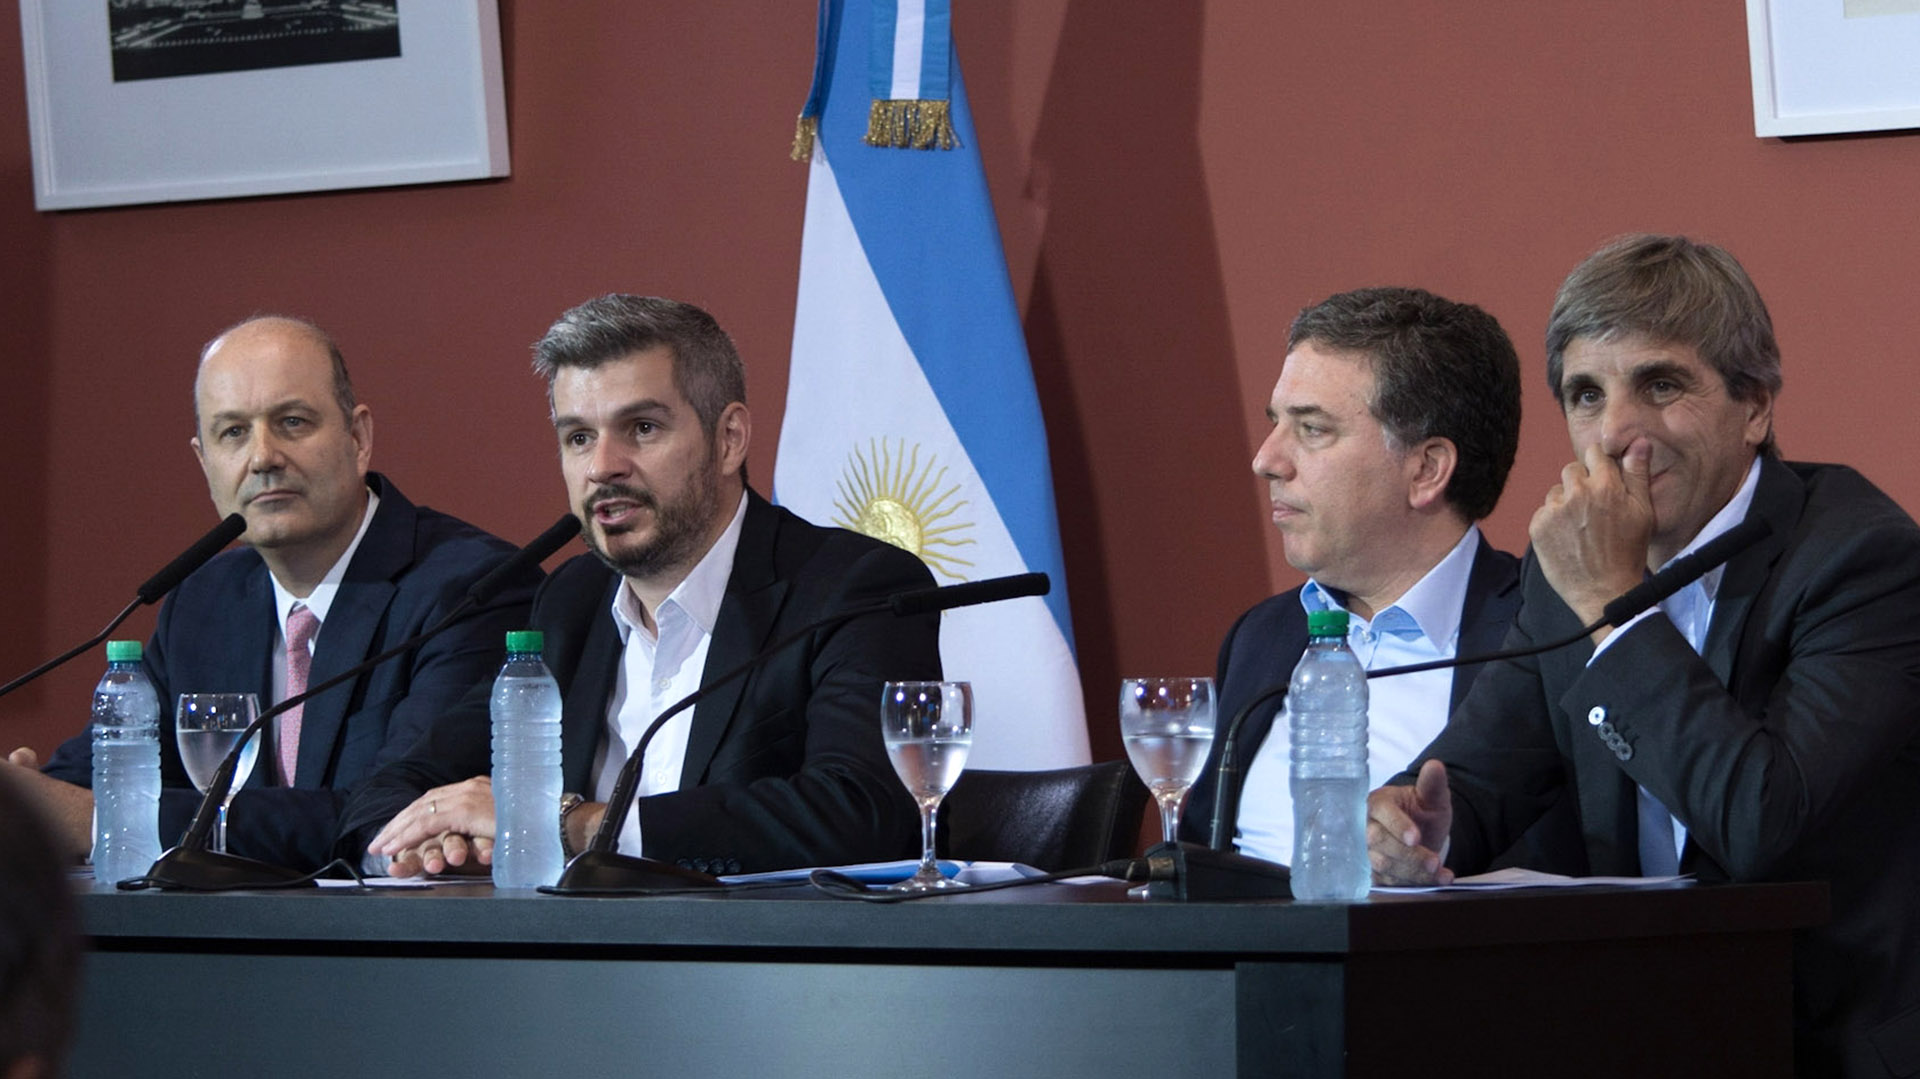 El ex vicepresidente del BCRA en la era Macri criticó al ex presidente por la inflación y habló de “aprietes” en su gobierno